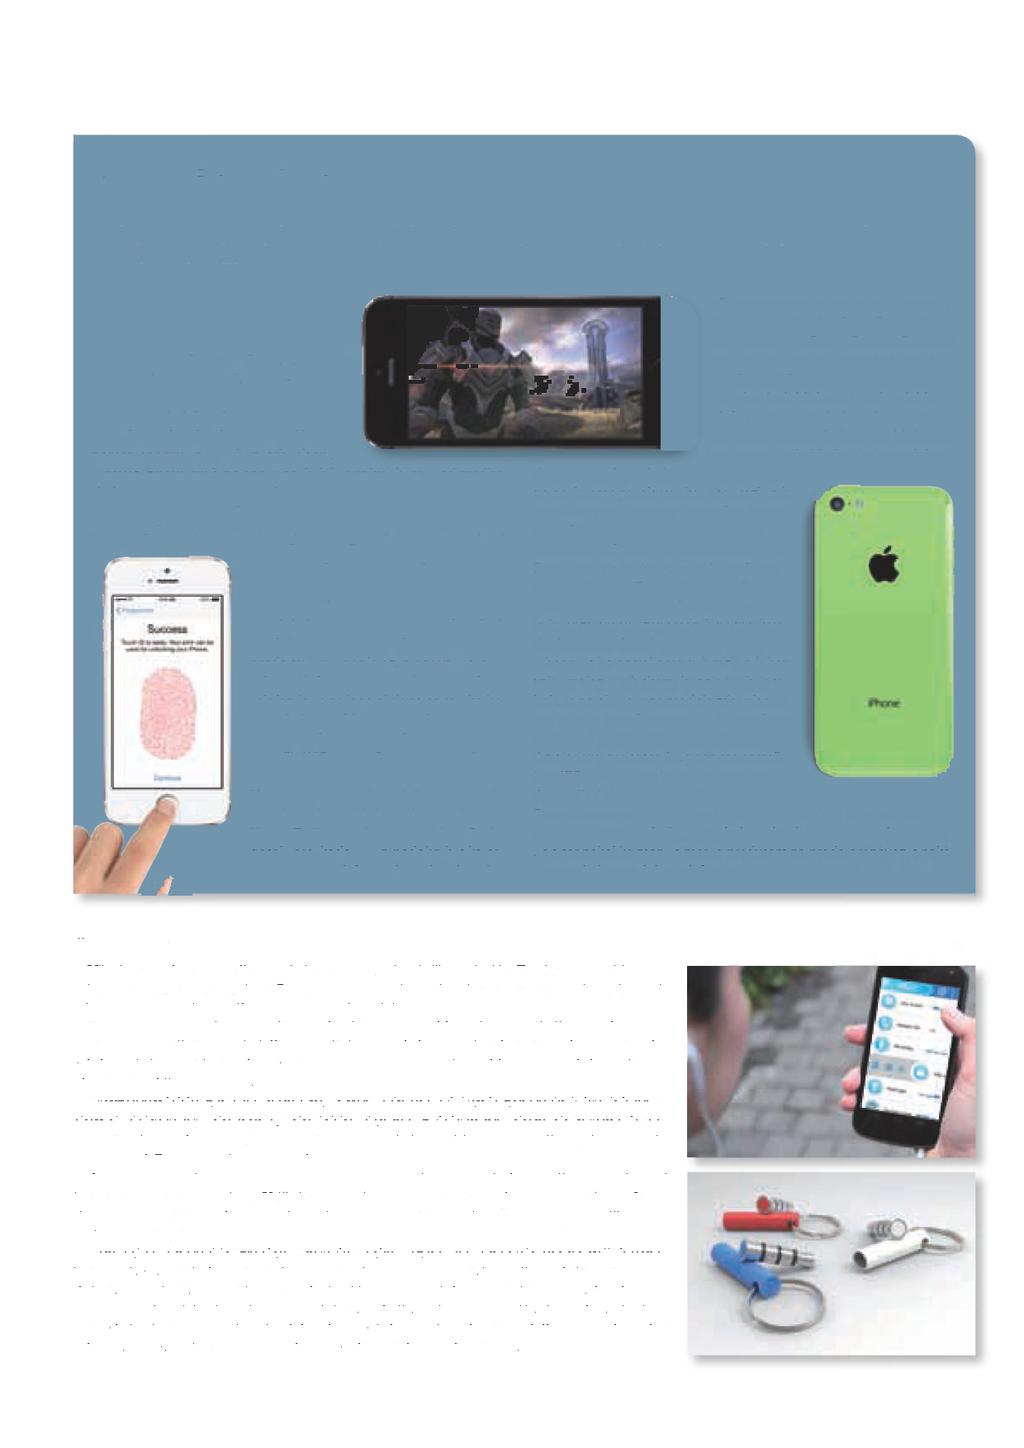 NOVICE Barvni in zlati Apple je predstavil nova modela pametnega telefona iphone, ki so ju poimenovali iphone 5s in iphone 5c.